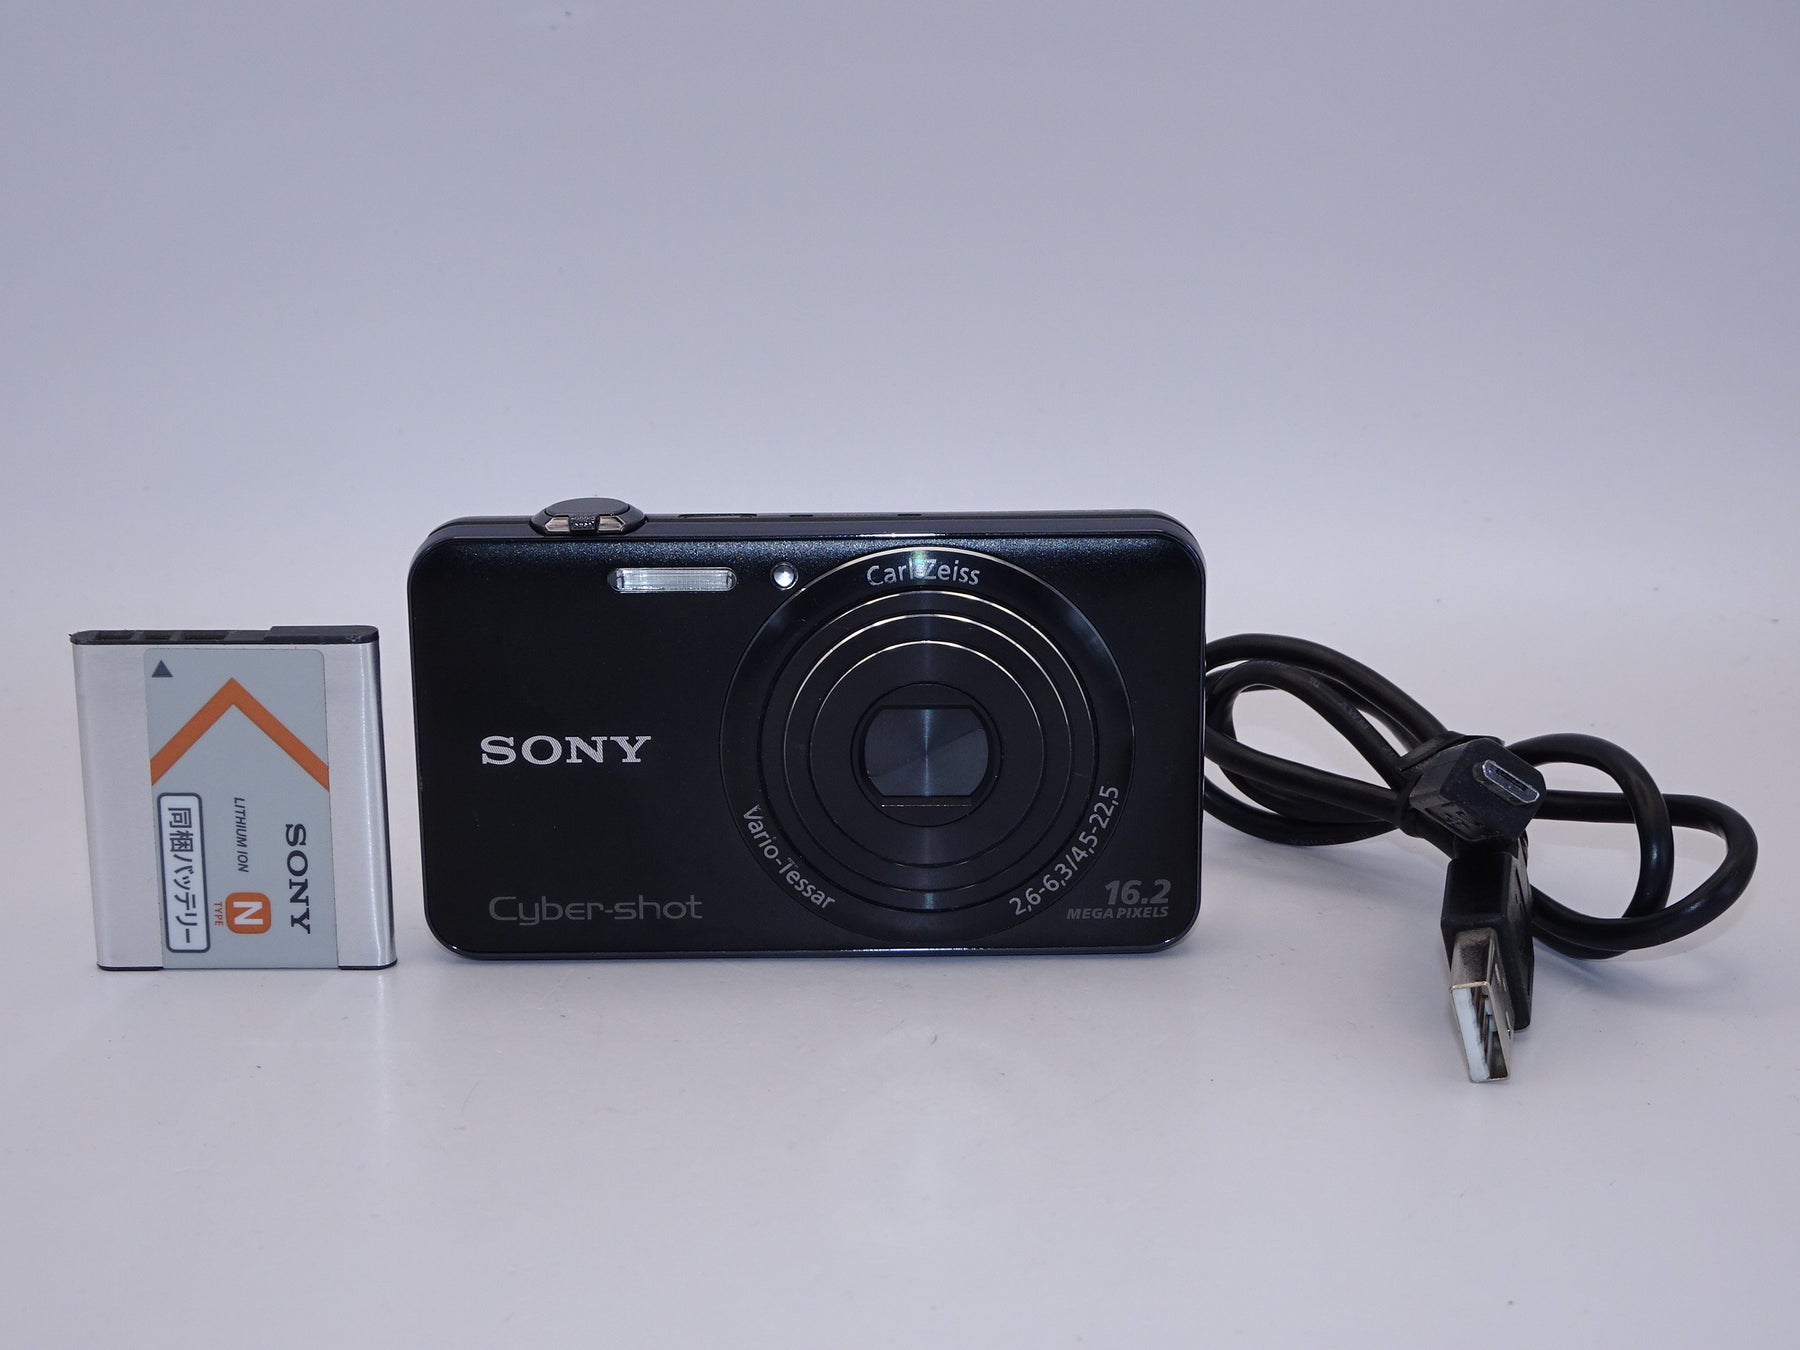 【外観特上級】ソニー SONY Cyber-shot WX50 ブラック DSC-WX50